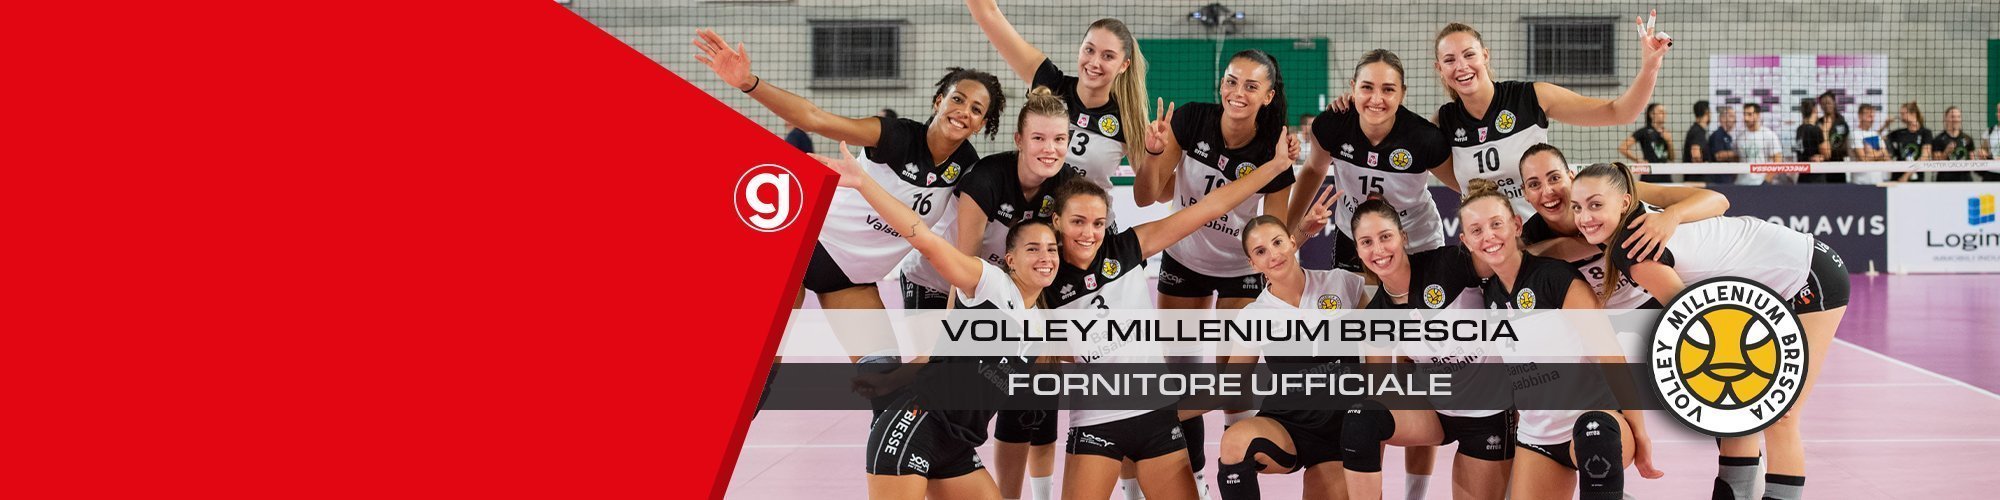 Grafomedia fornitore ufficiale Volley Millenium Brescia 